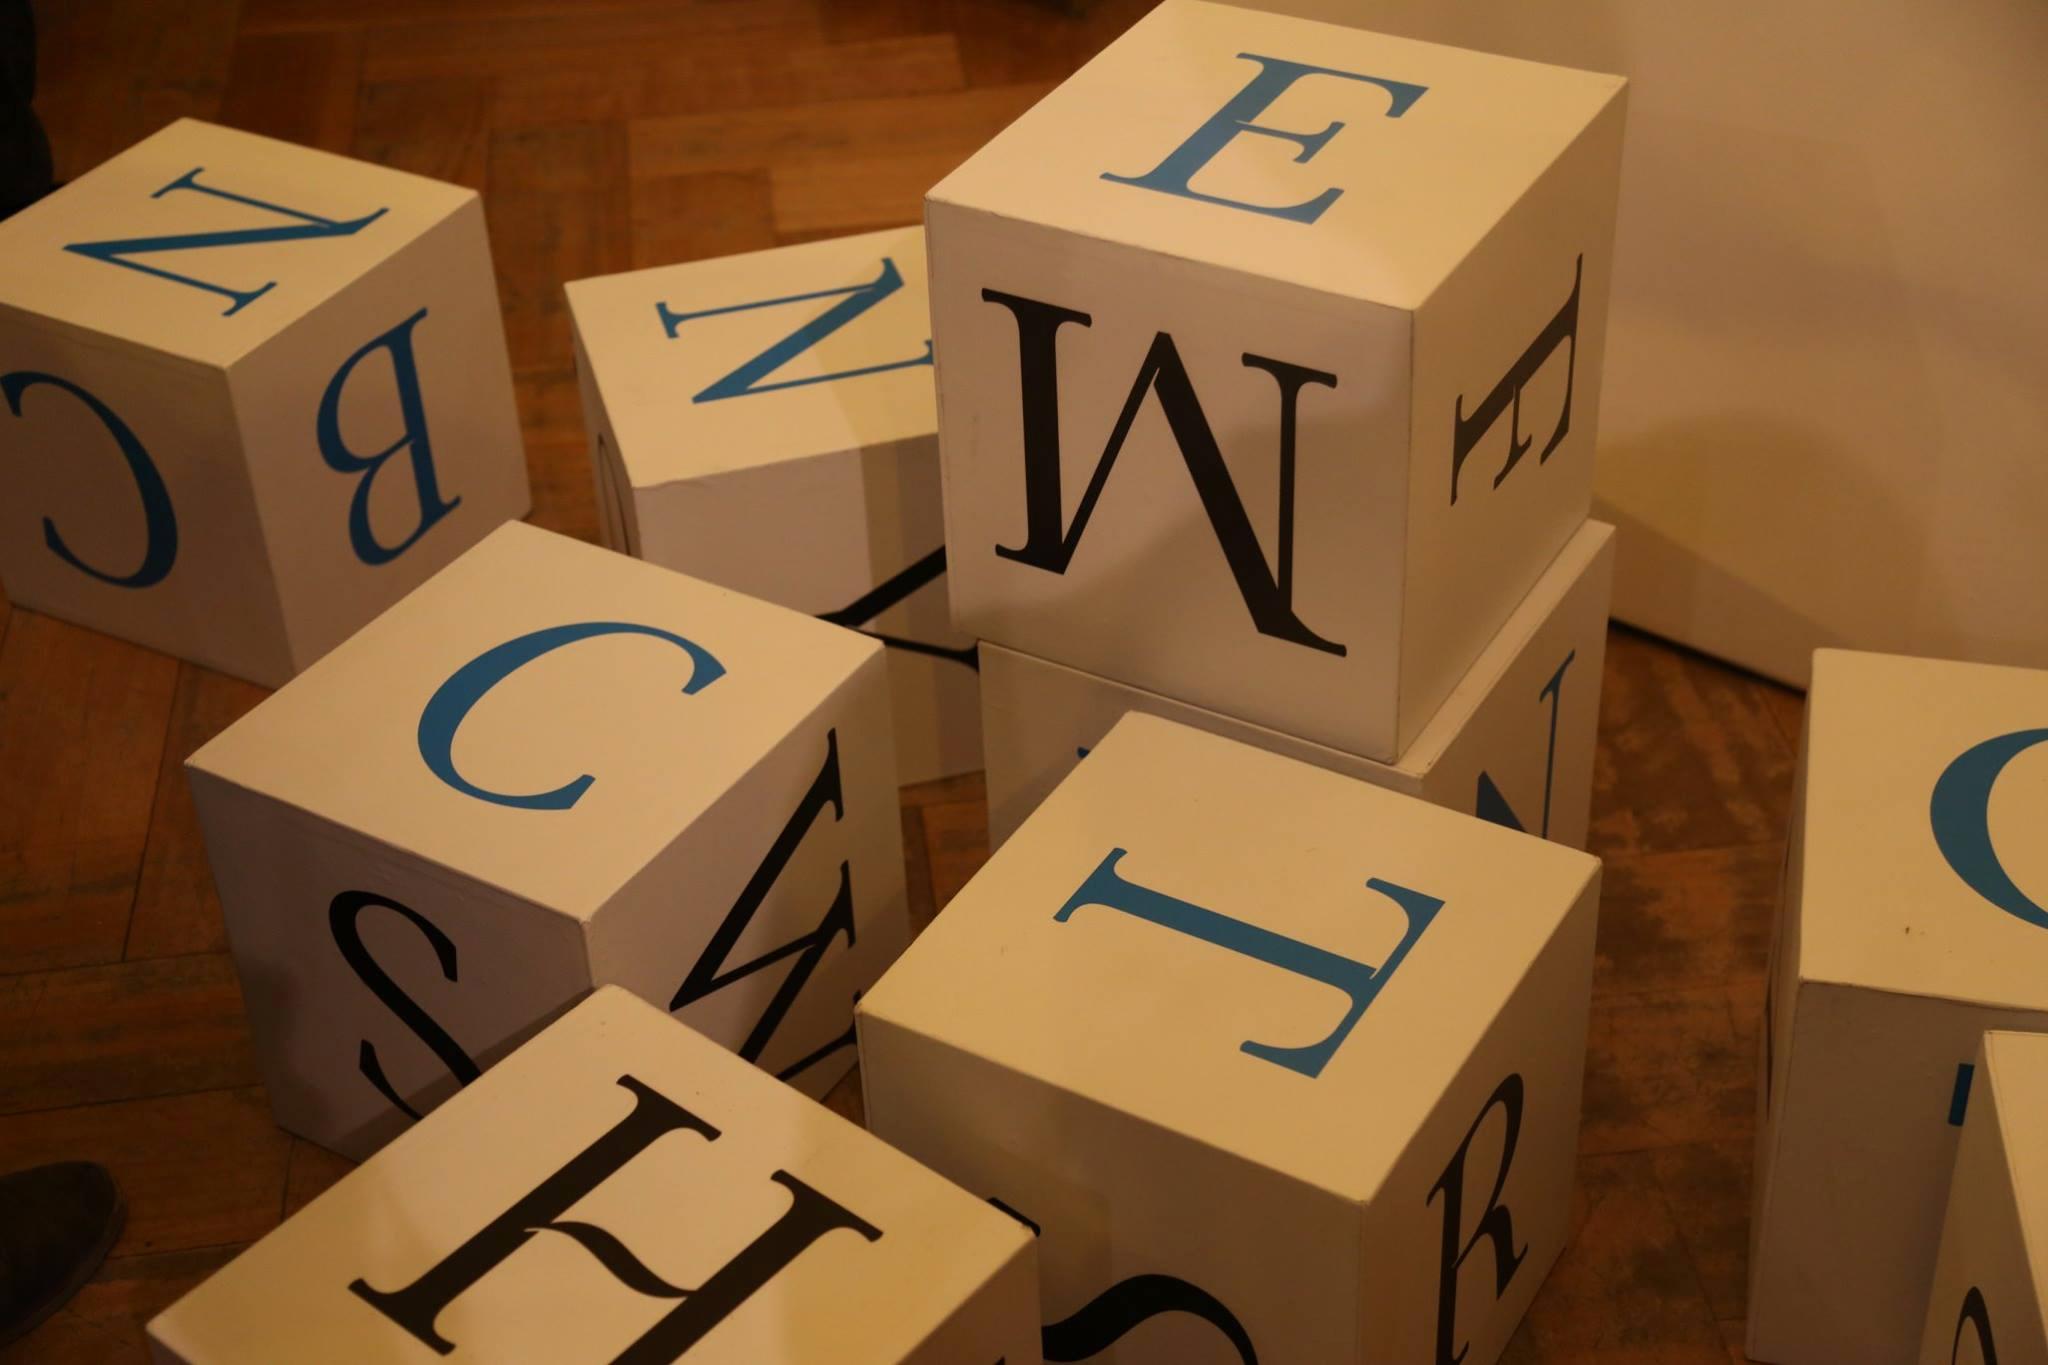 Algunas fuentes de la tipografía "Biblioteca" en cubos son parte de la exposición.